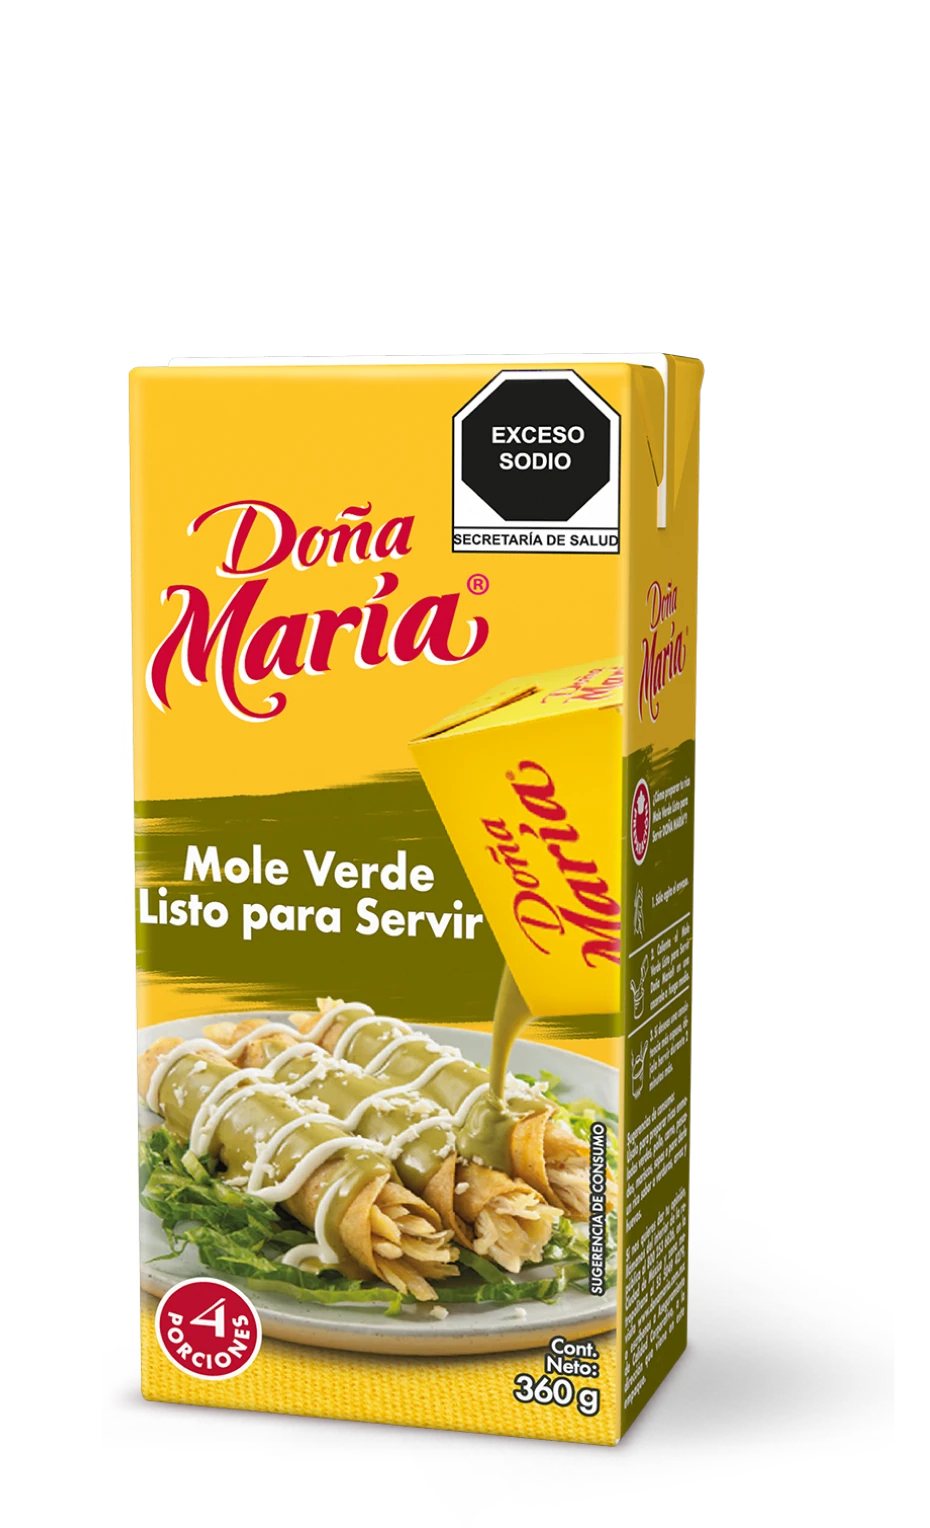 Product Mole Verde Doña María ®